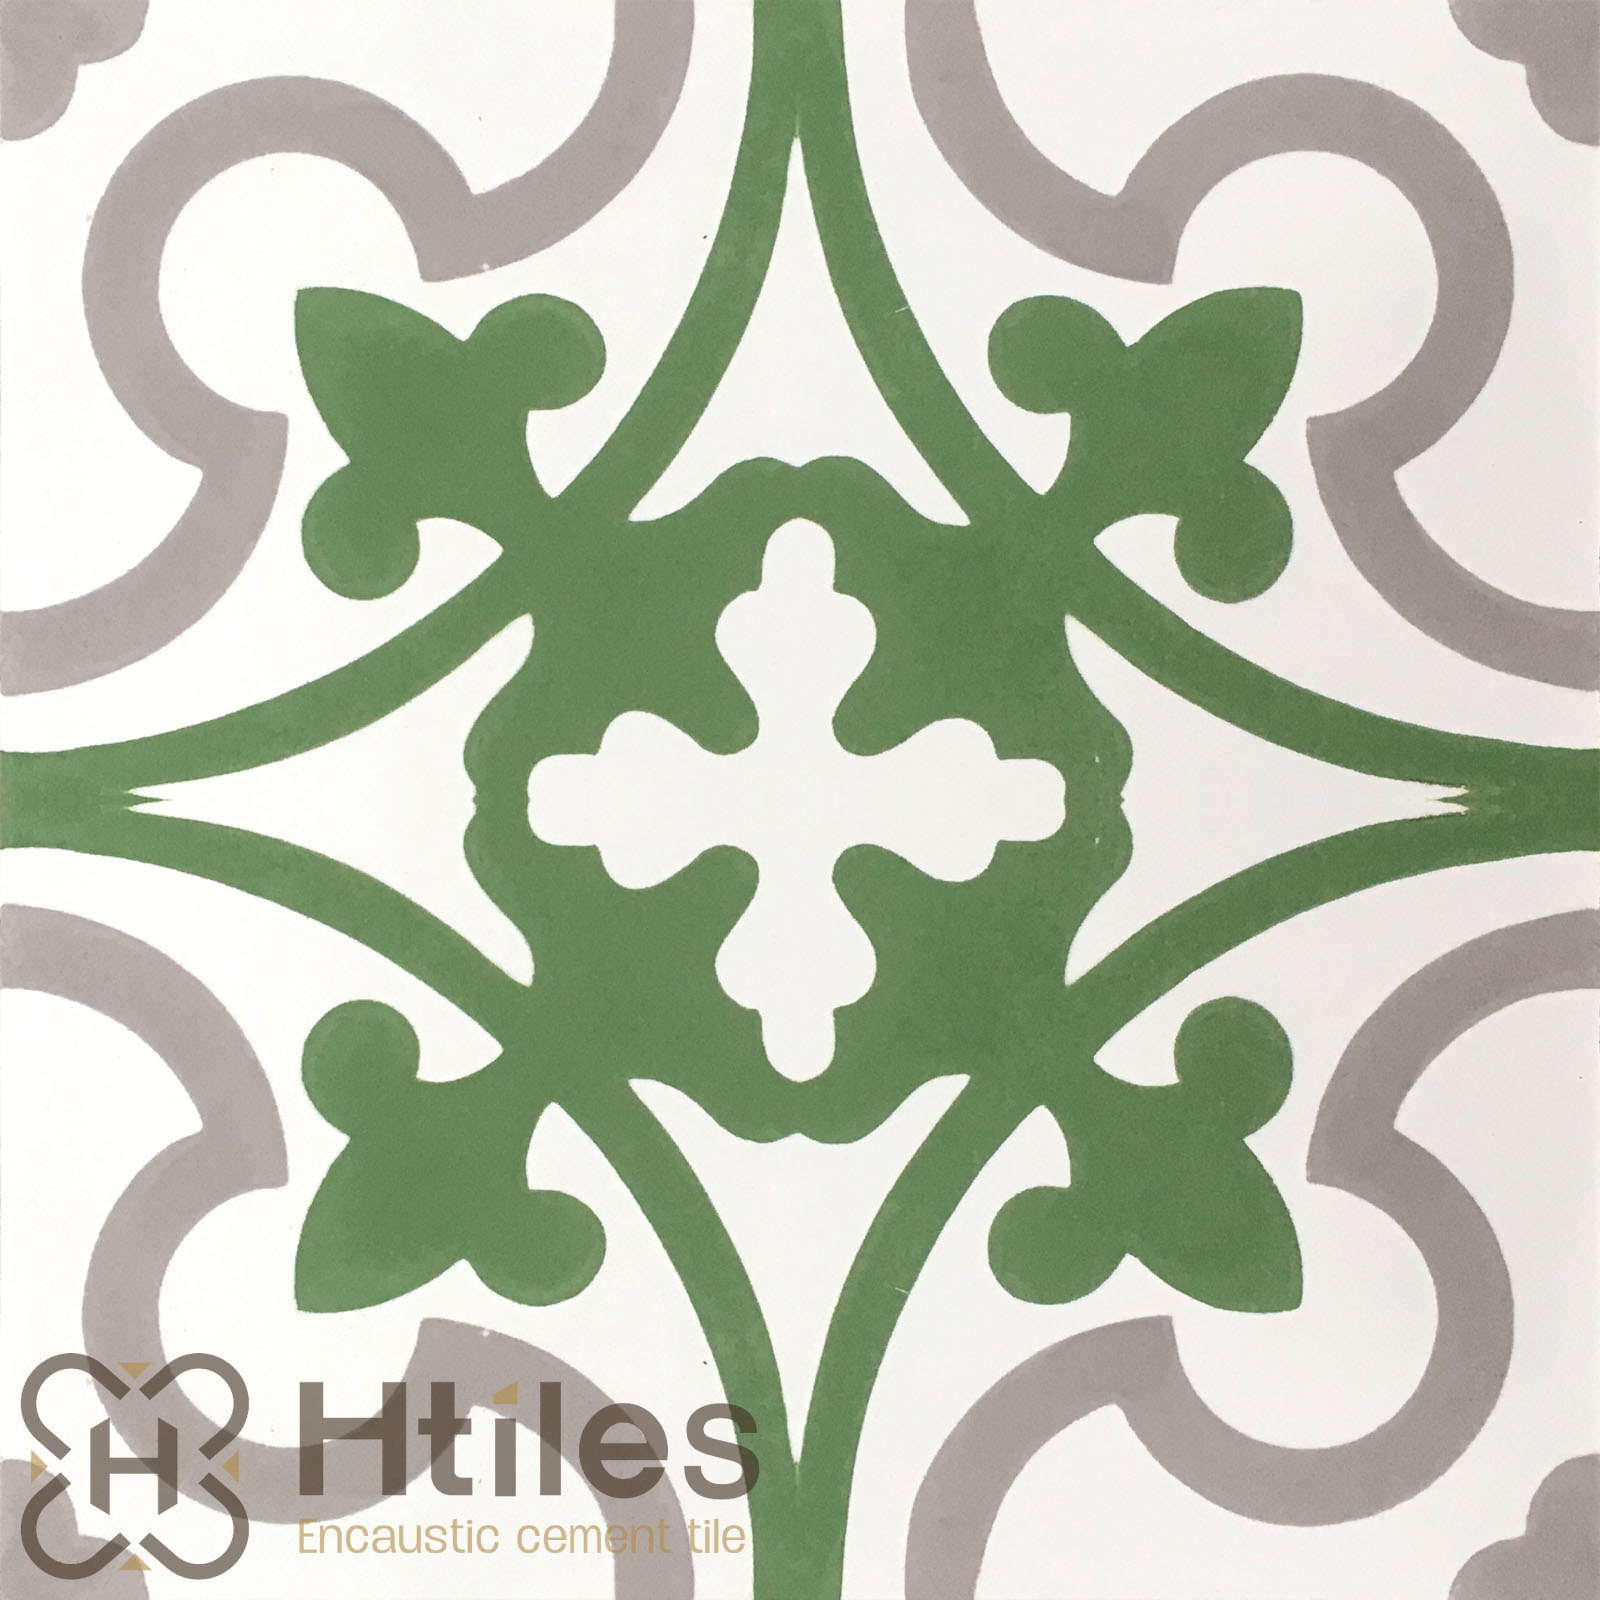 H186.2 Encaustic Cement Tile